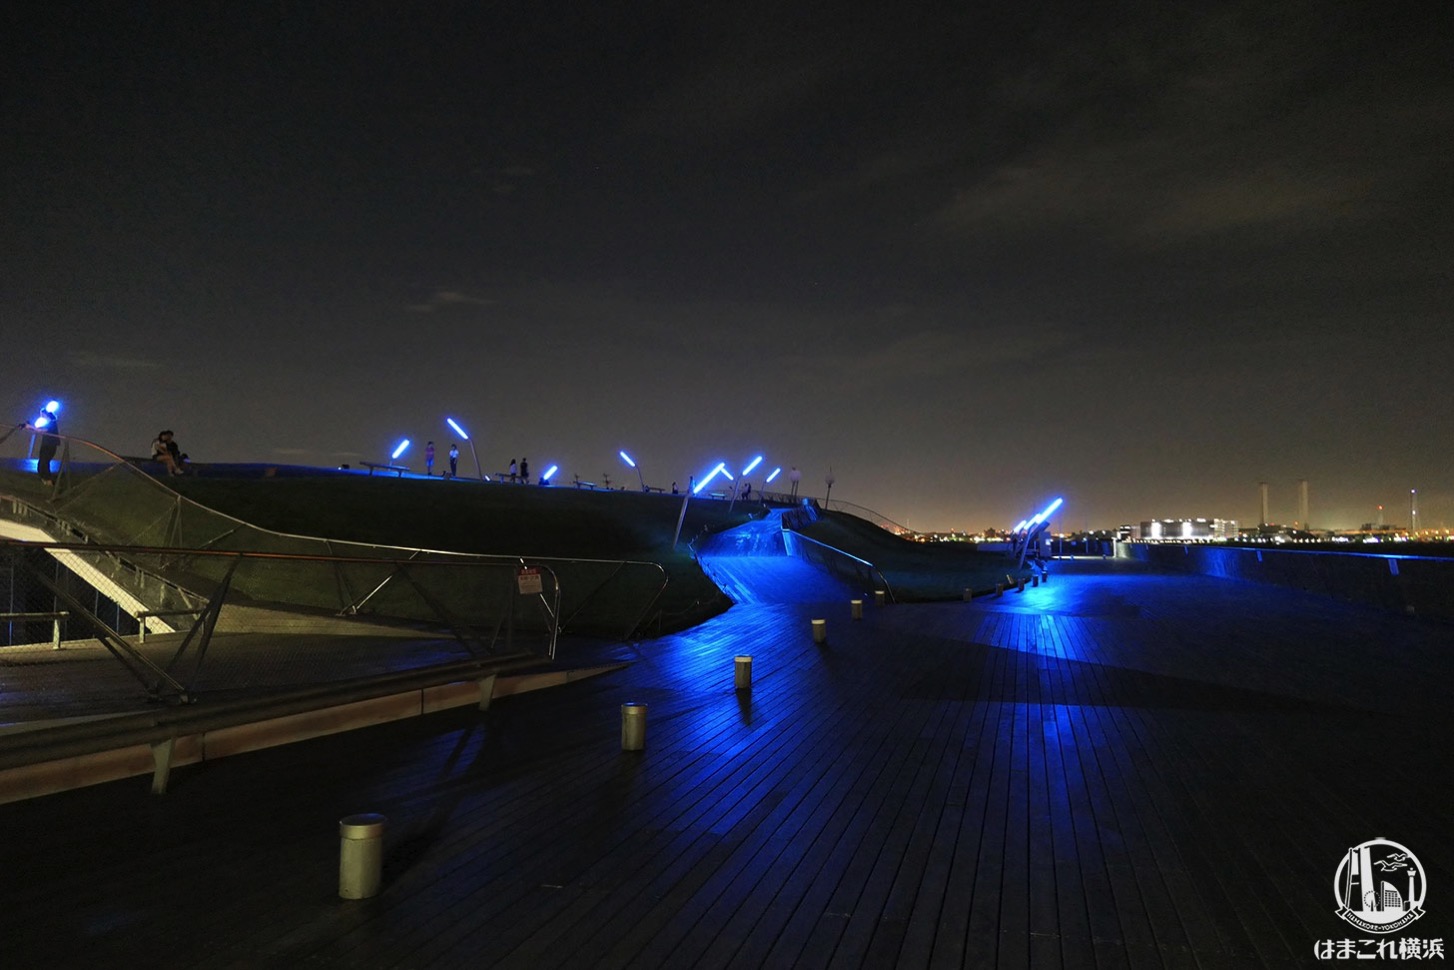 横浜港大さん橋国際客船ターミナル 屋上の夜景